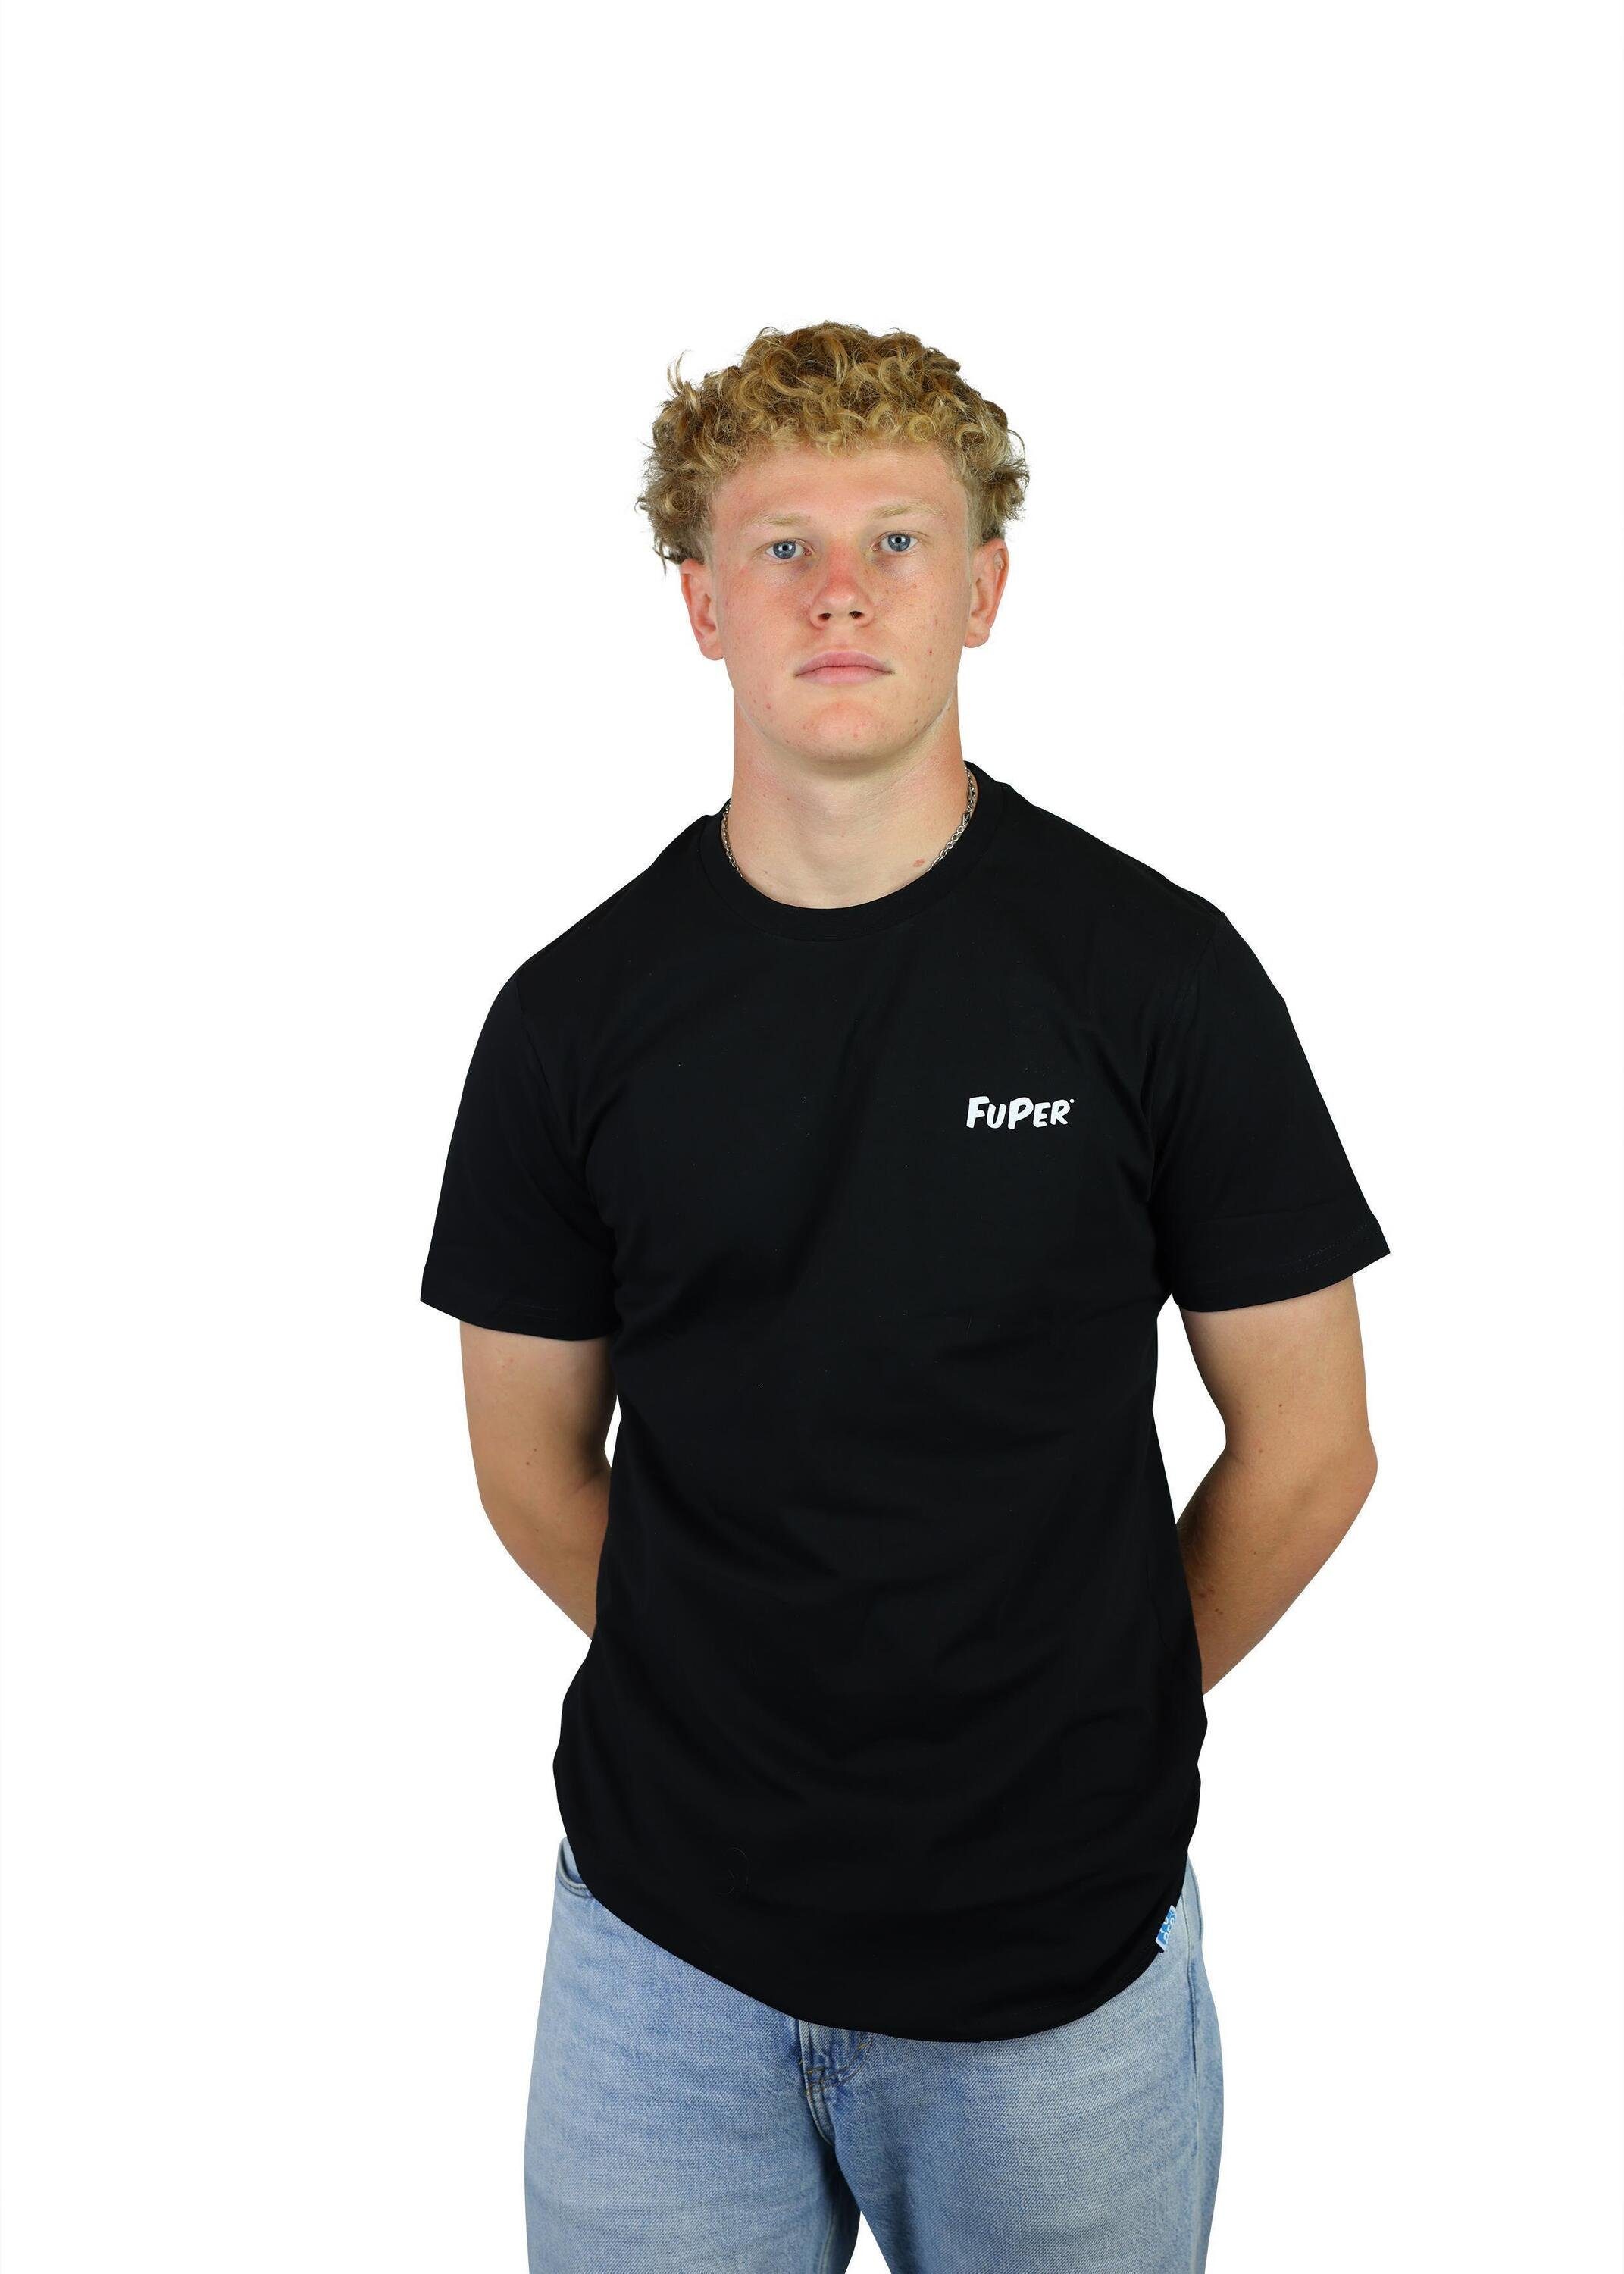 FuPer T-Shirt Luis für Kinder, Fußball, Black Jugend aus Baumwolle